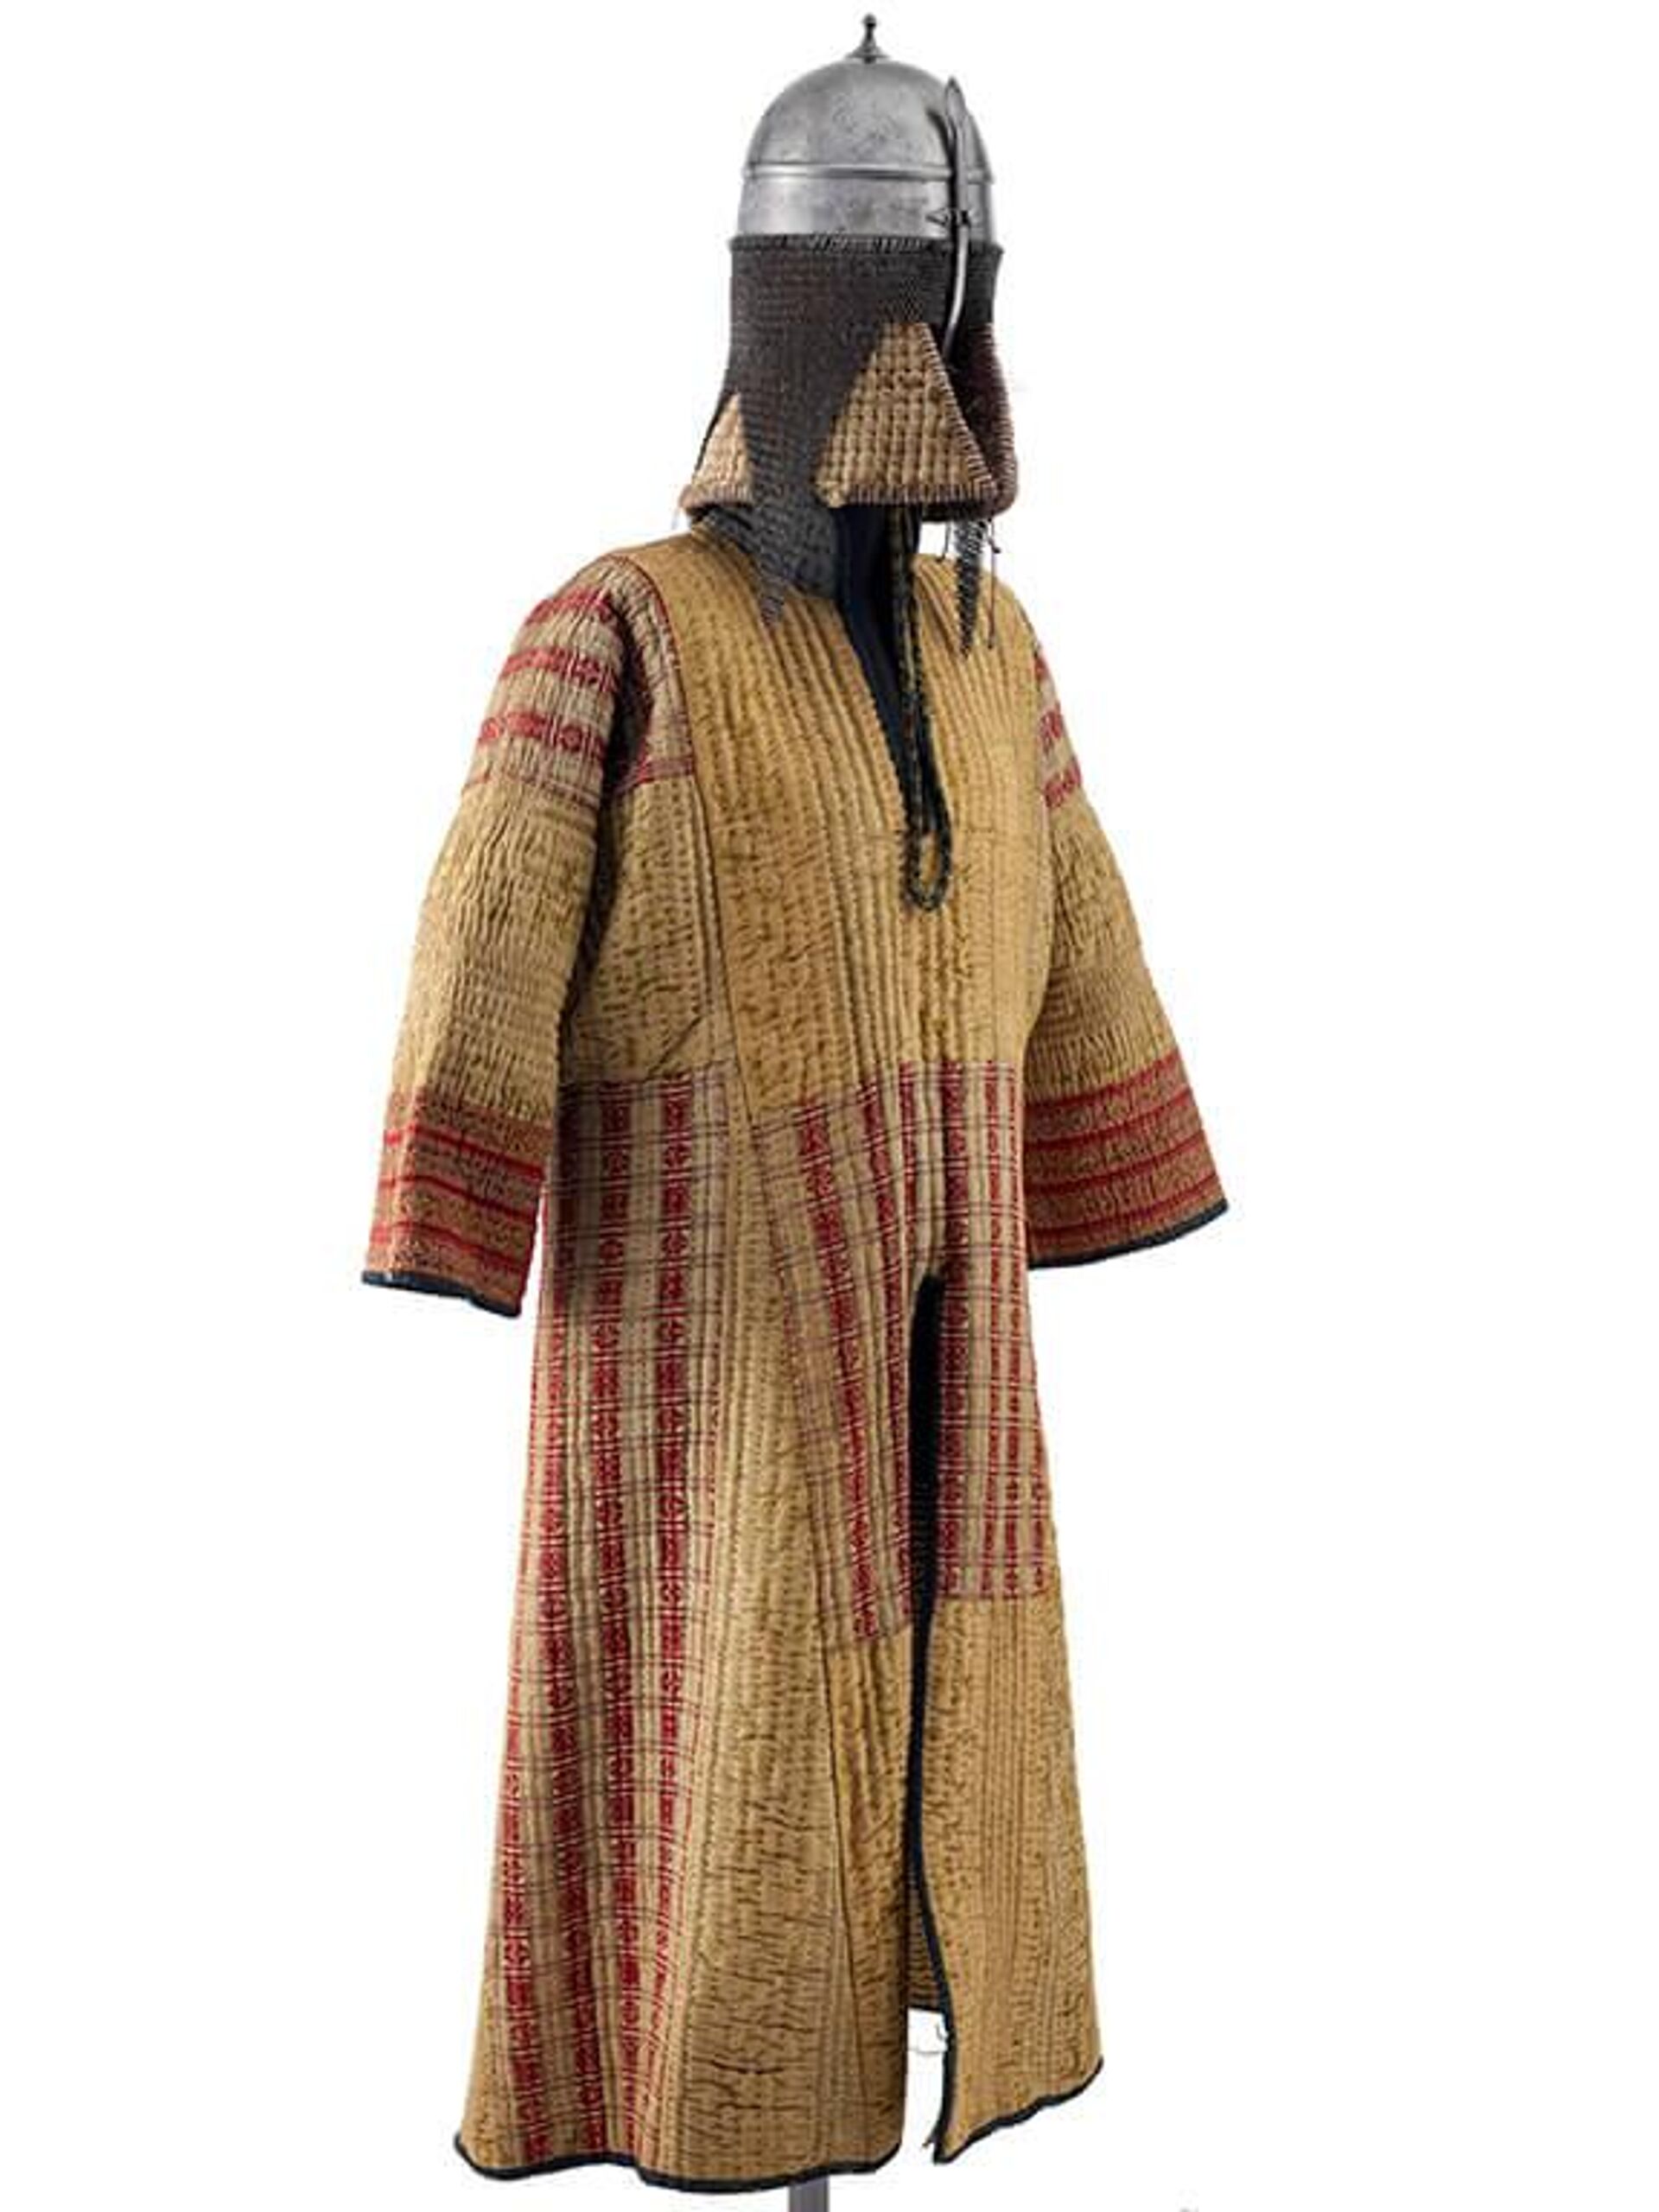 Um conjunto de armaduras sudanesas compreendendo um casaco acolchoado (jibbah) com saias divididas para montar e um capacete com uma cota de malha. Provavelmente chegou ao Sudão no final do século XIX. - Sputnik Brasil, 1920, 20.06.2022